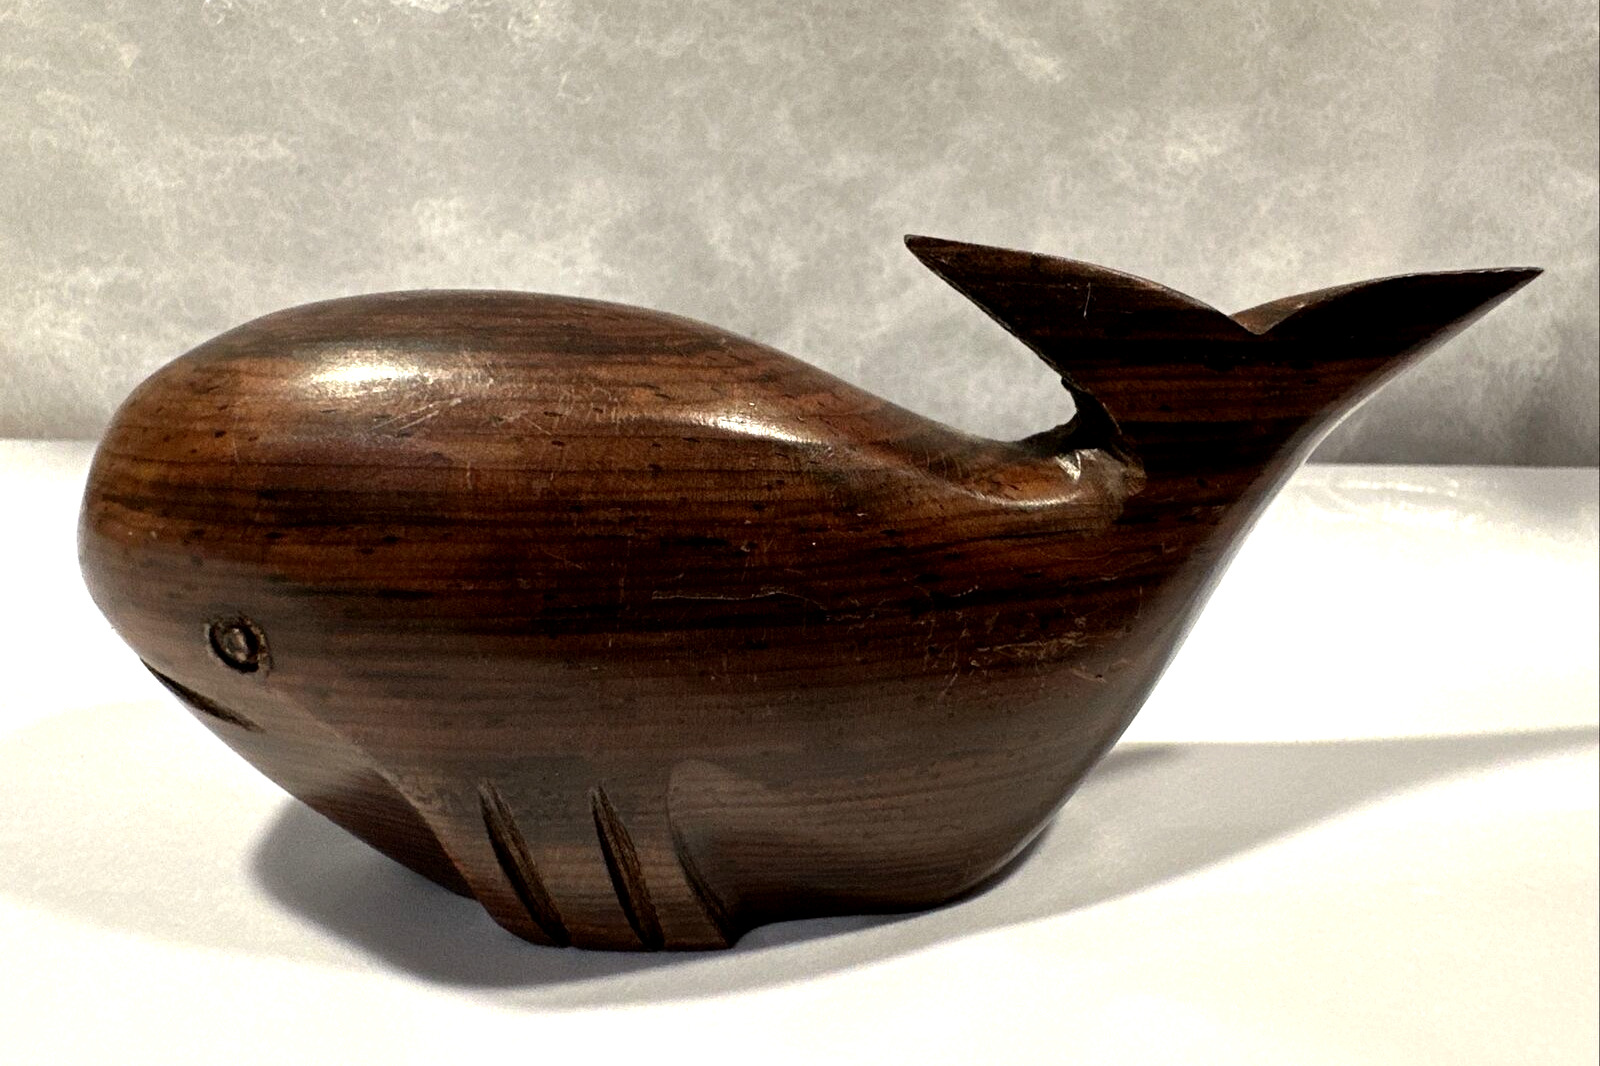 Vintage Ironwood Mini Whale Figurine 3.5” x 1.75” Artist Hand Carved - Beautiful